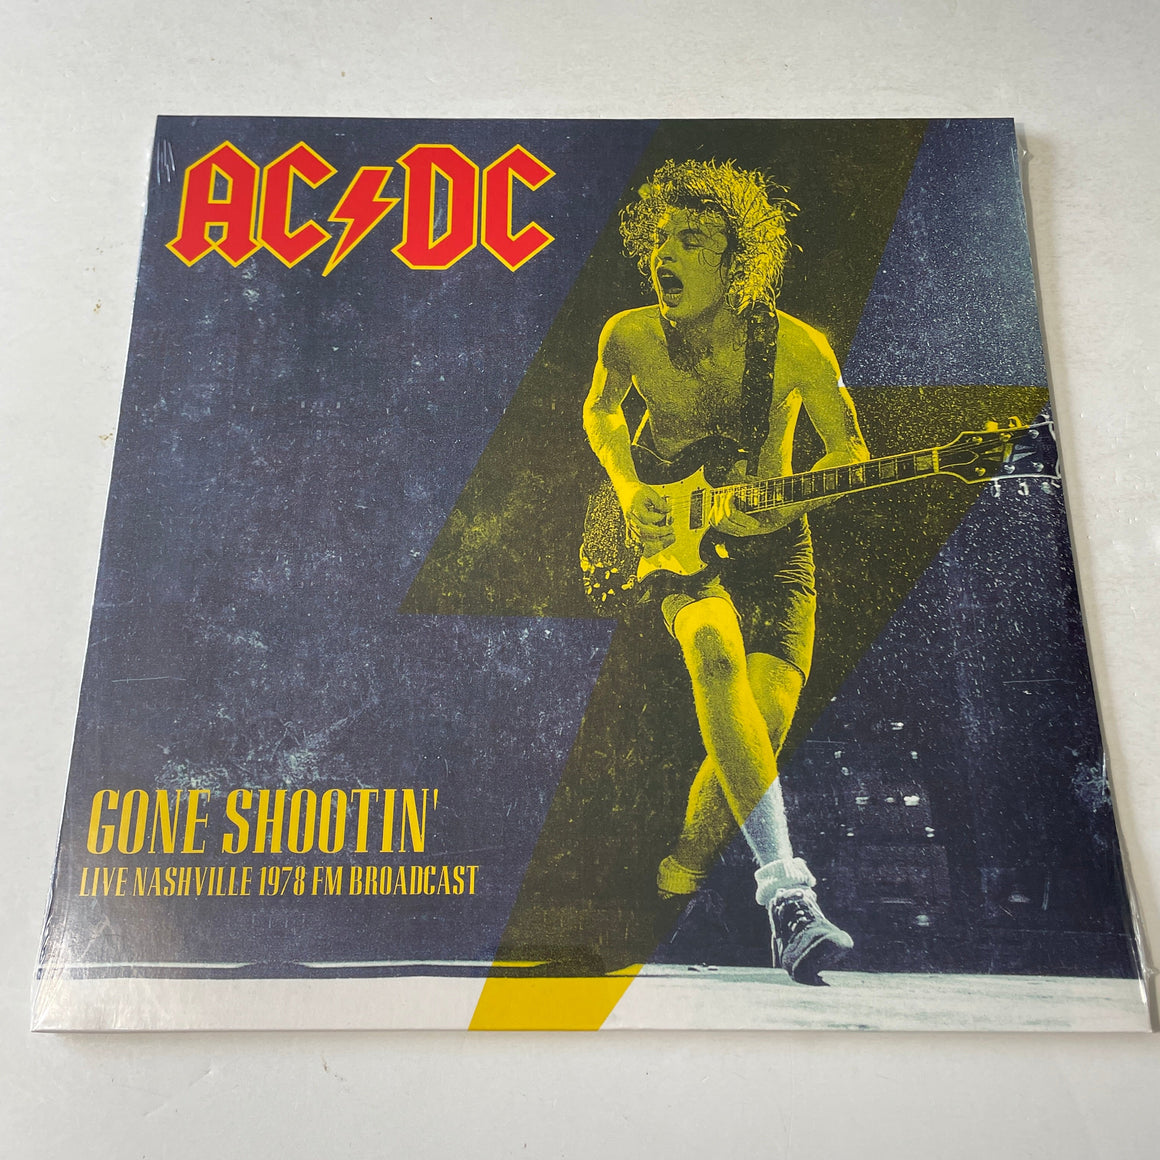 AC/DC Gone Shootin' Live Nashville 1978 FM Broadcast New Vinyl LP M\M